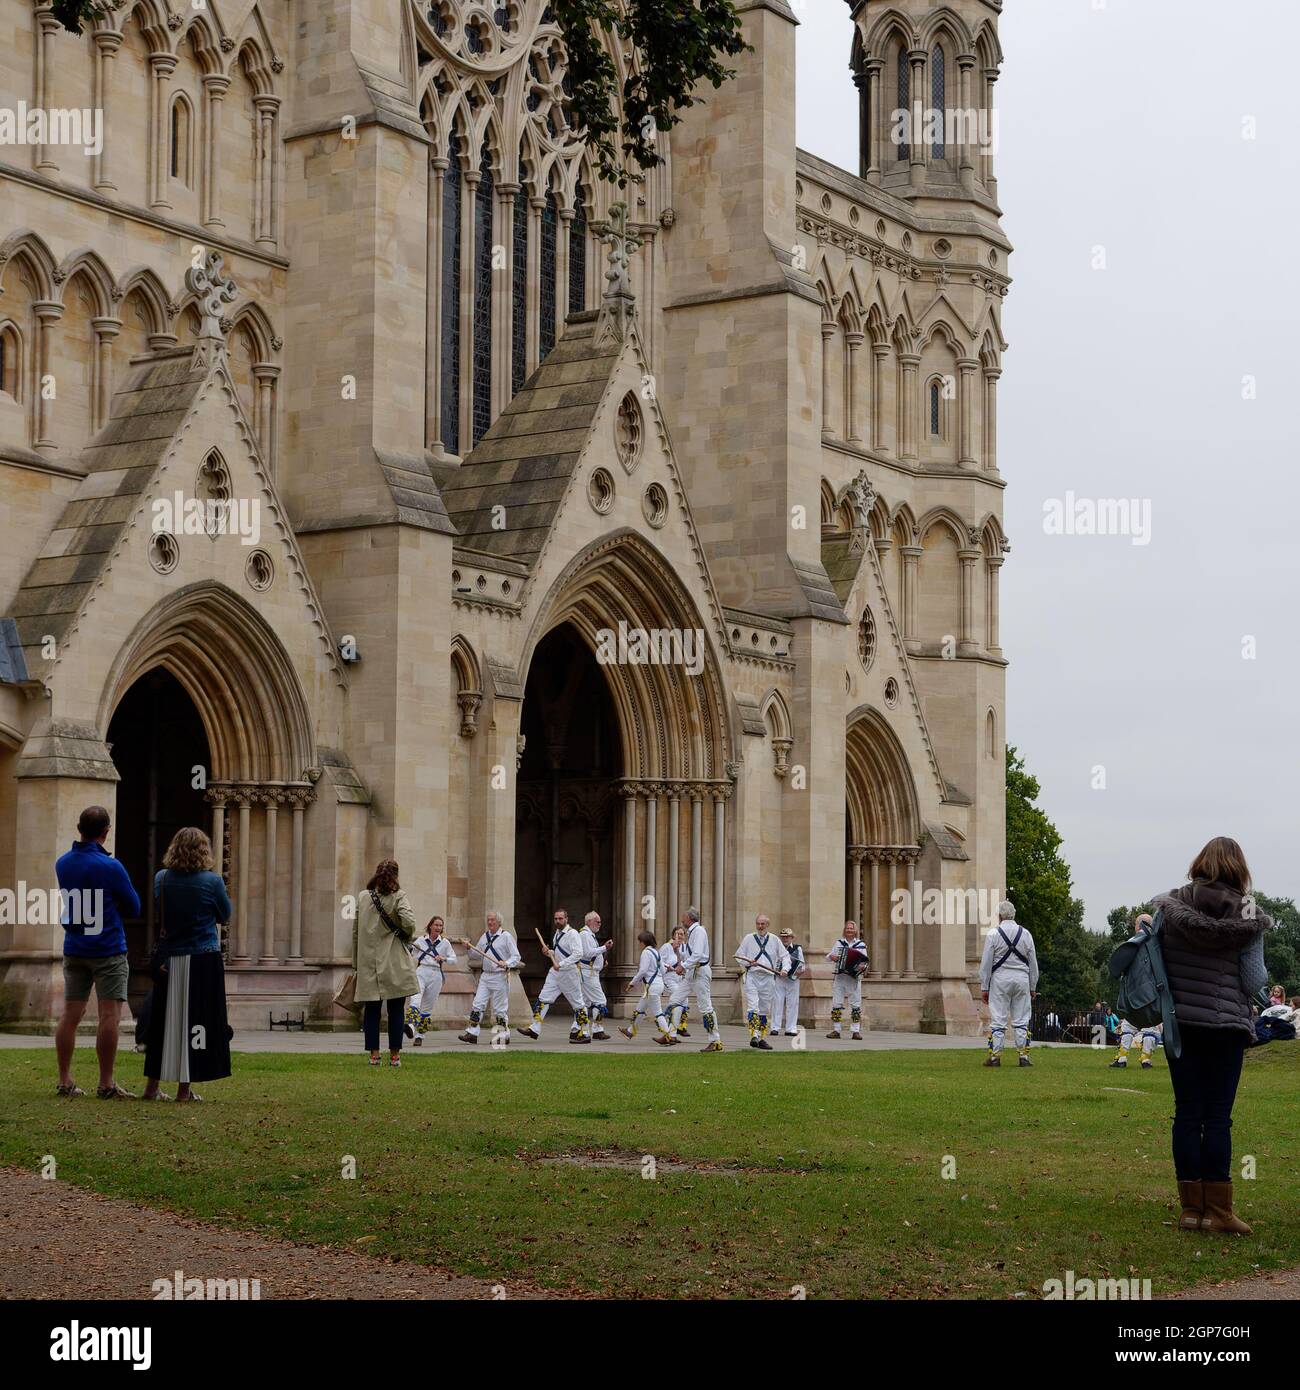 St Albans, Hertfordshire, Inghilterra, settembre 21 2021: La gente che guarda i ballerini di Morris eseguire una danza popolare tradizionale di fronte alla Cattedrale. Foto Stock